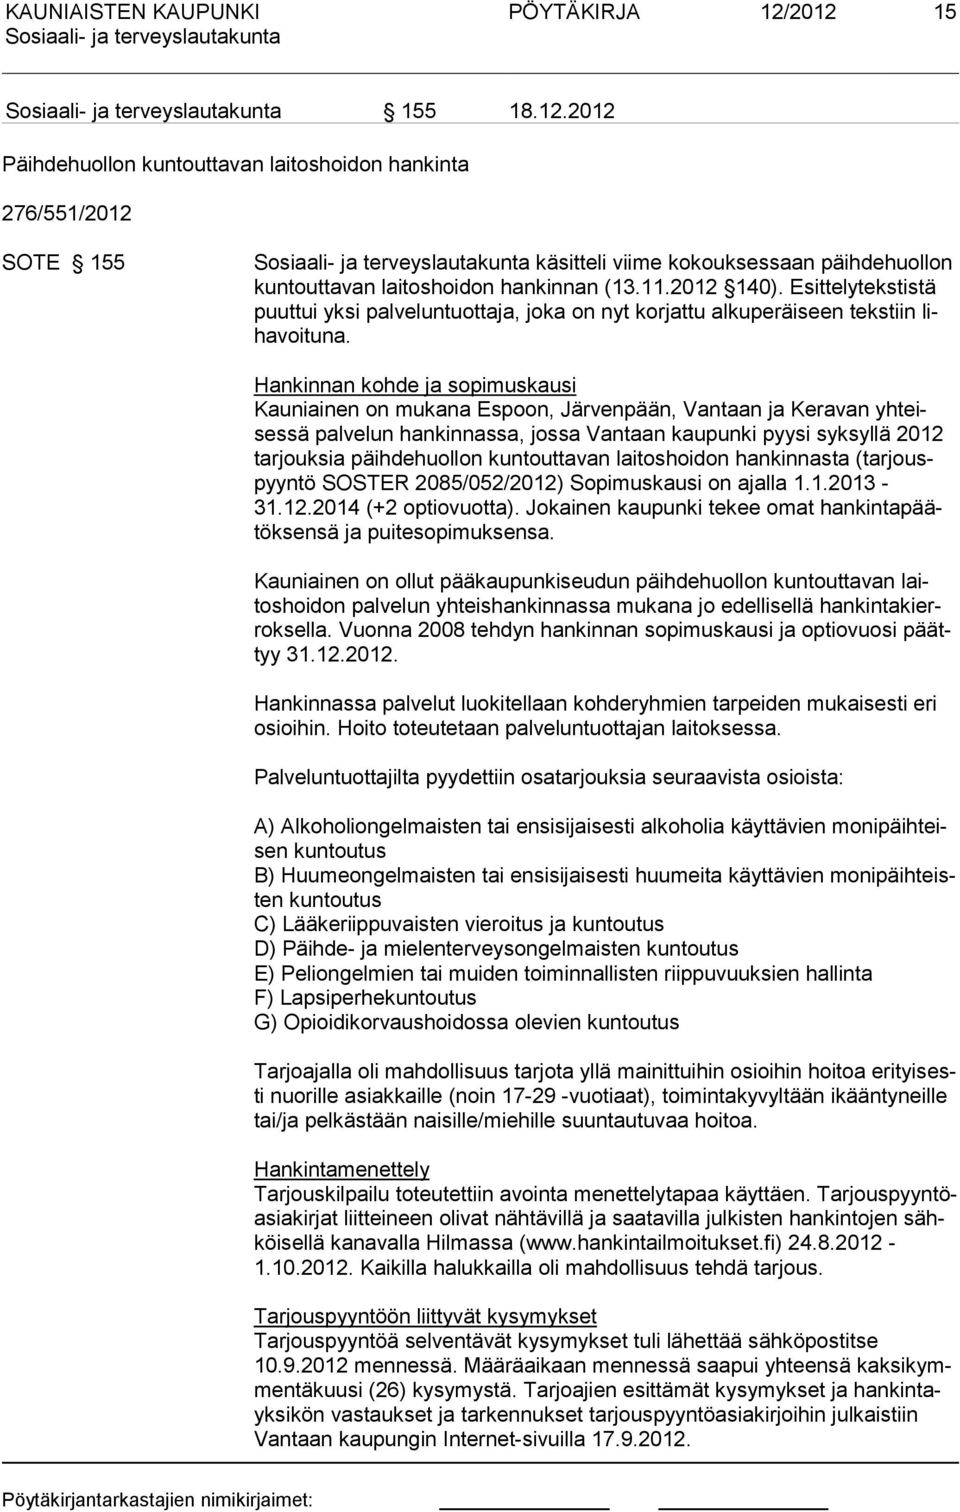 Hankinnan kohde ja sopimuskausi Kauniainen on mukana Espoon, Järvenpään, Vantaan ja Keravan yhteisessä palvelun hankinnassa, jossa Vantaan kaupunki pyysi syksyllä 2012 tarjouksia päihdehuollon